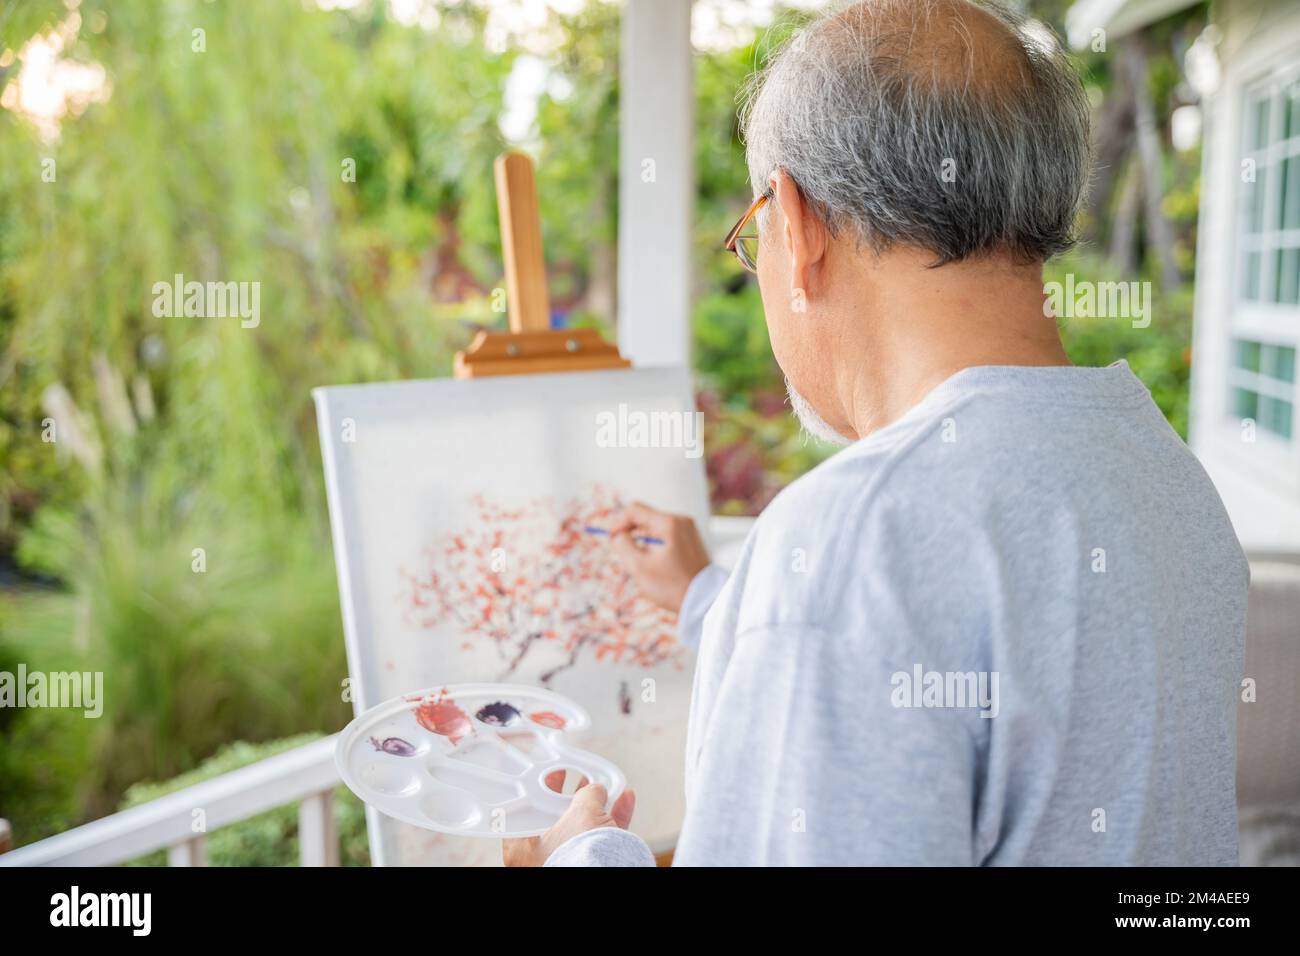 Lifestyle asiatischer älterer Mann, der Bilder mit Pinsel- und Ölfarben auf Leinwand malt Stockfoto